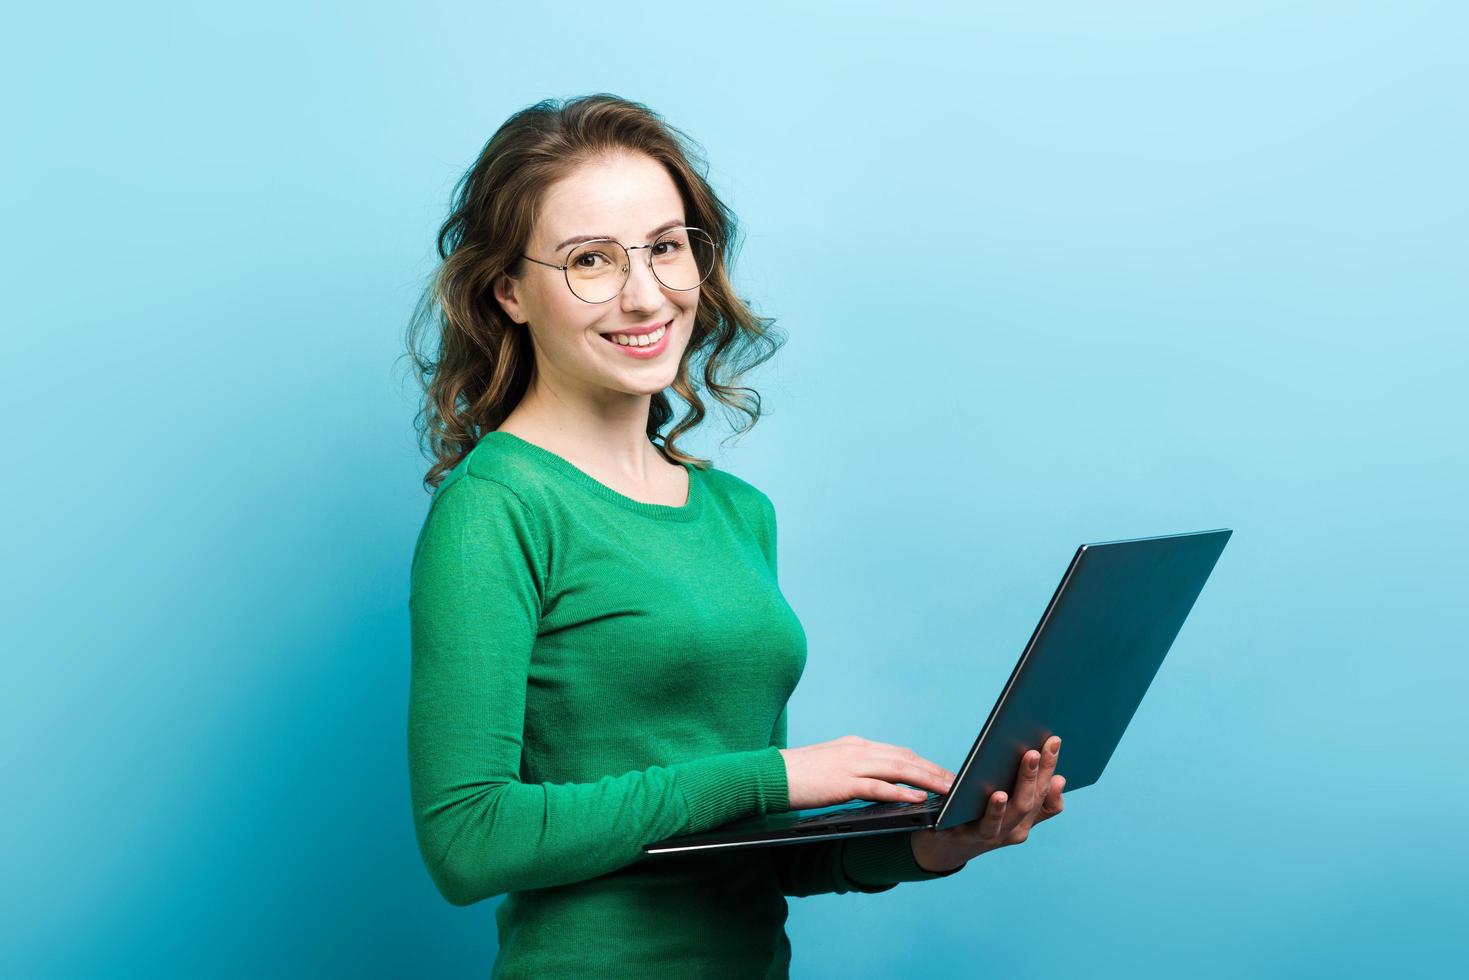 porträtt av ganska leende lockig kvinna i glasögon och bär i grön tröja som håller en bärbar dator foto